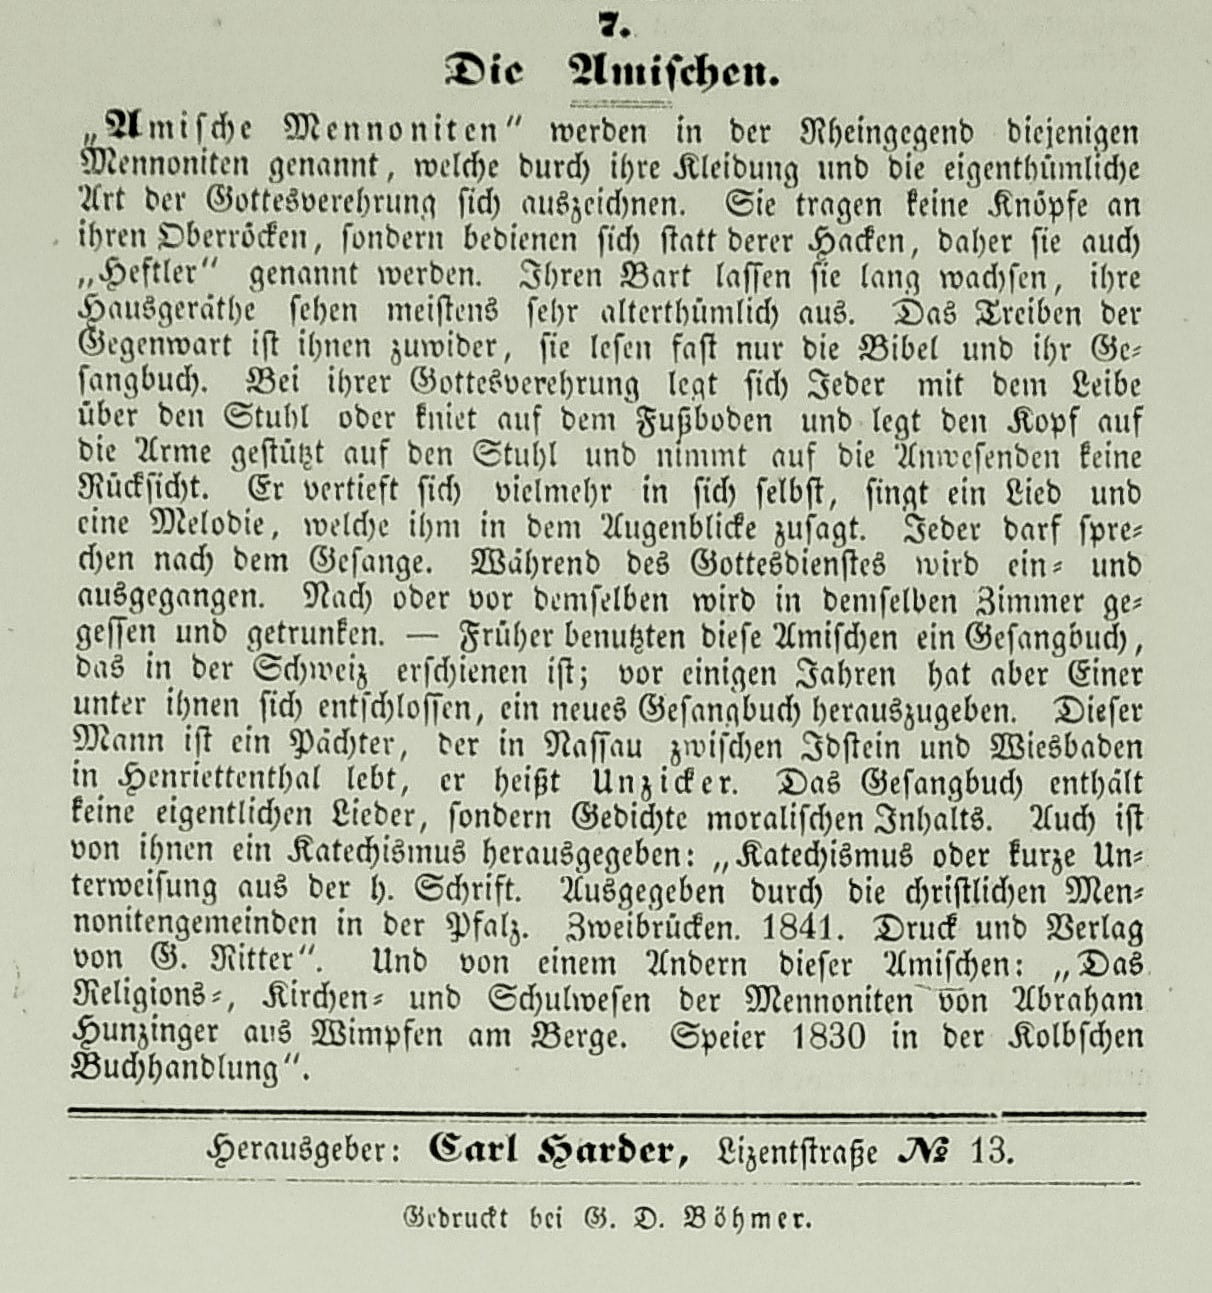 Carl Harder’s brief remarks on “The Amish.” (Monatsschrift für die evangelischen Mennoniten, October 1847, p. 16.)